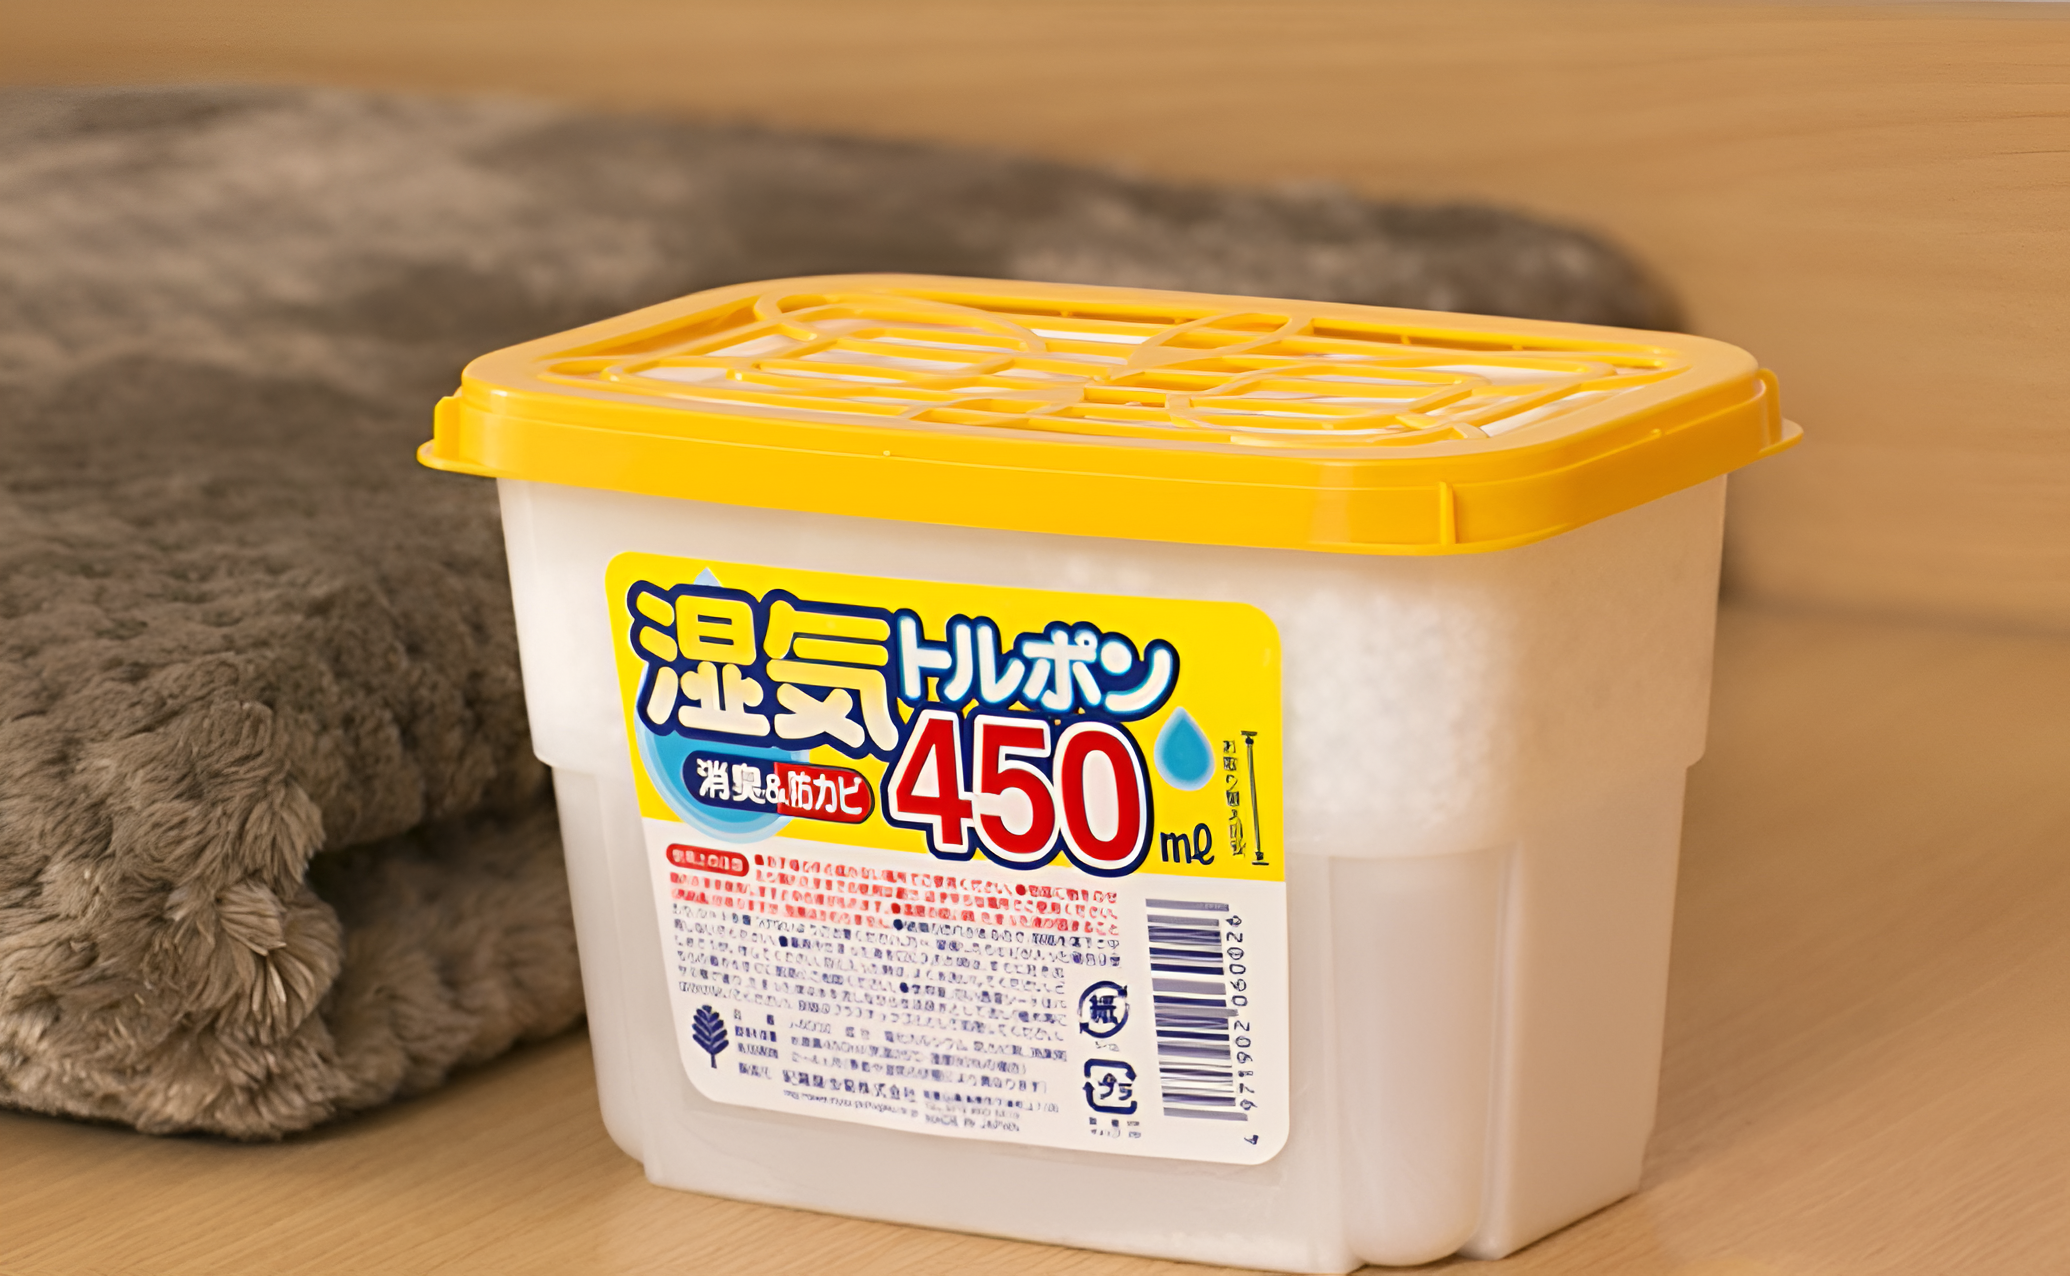 Giới thiệu chung về các hộp hút ẩm của Nhật